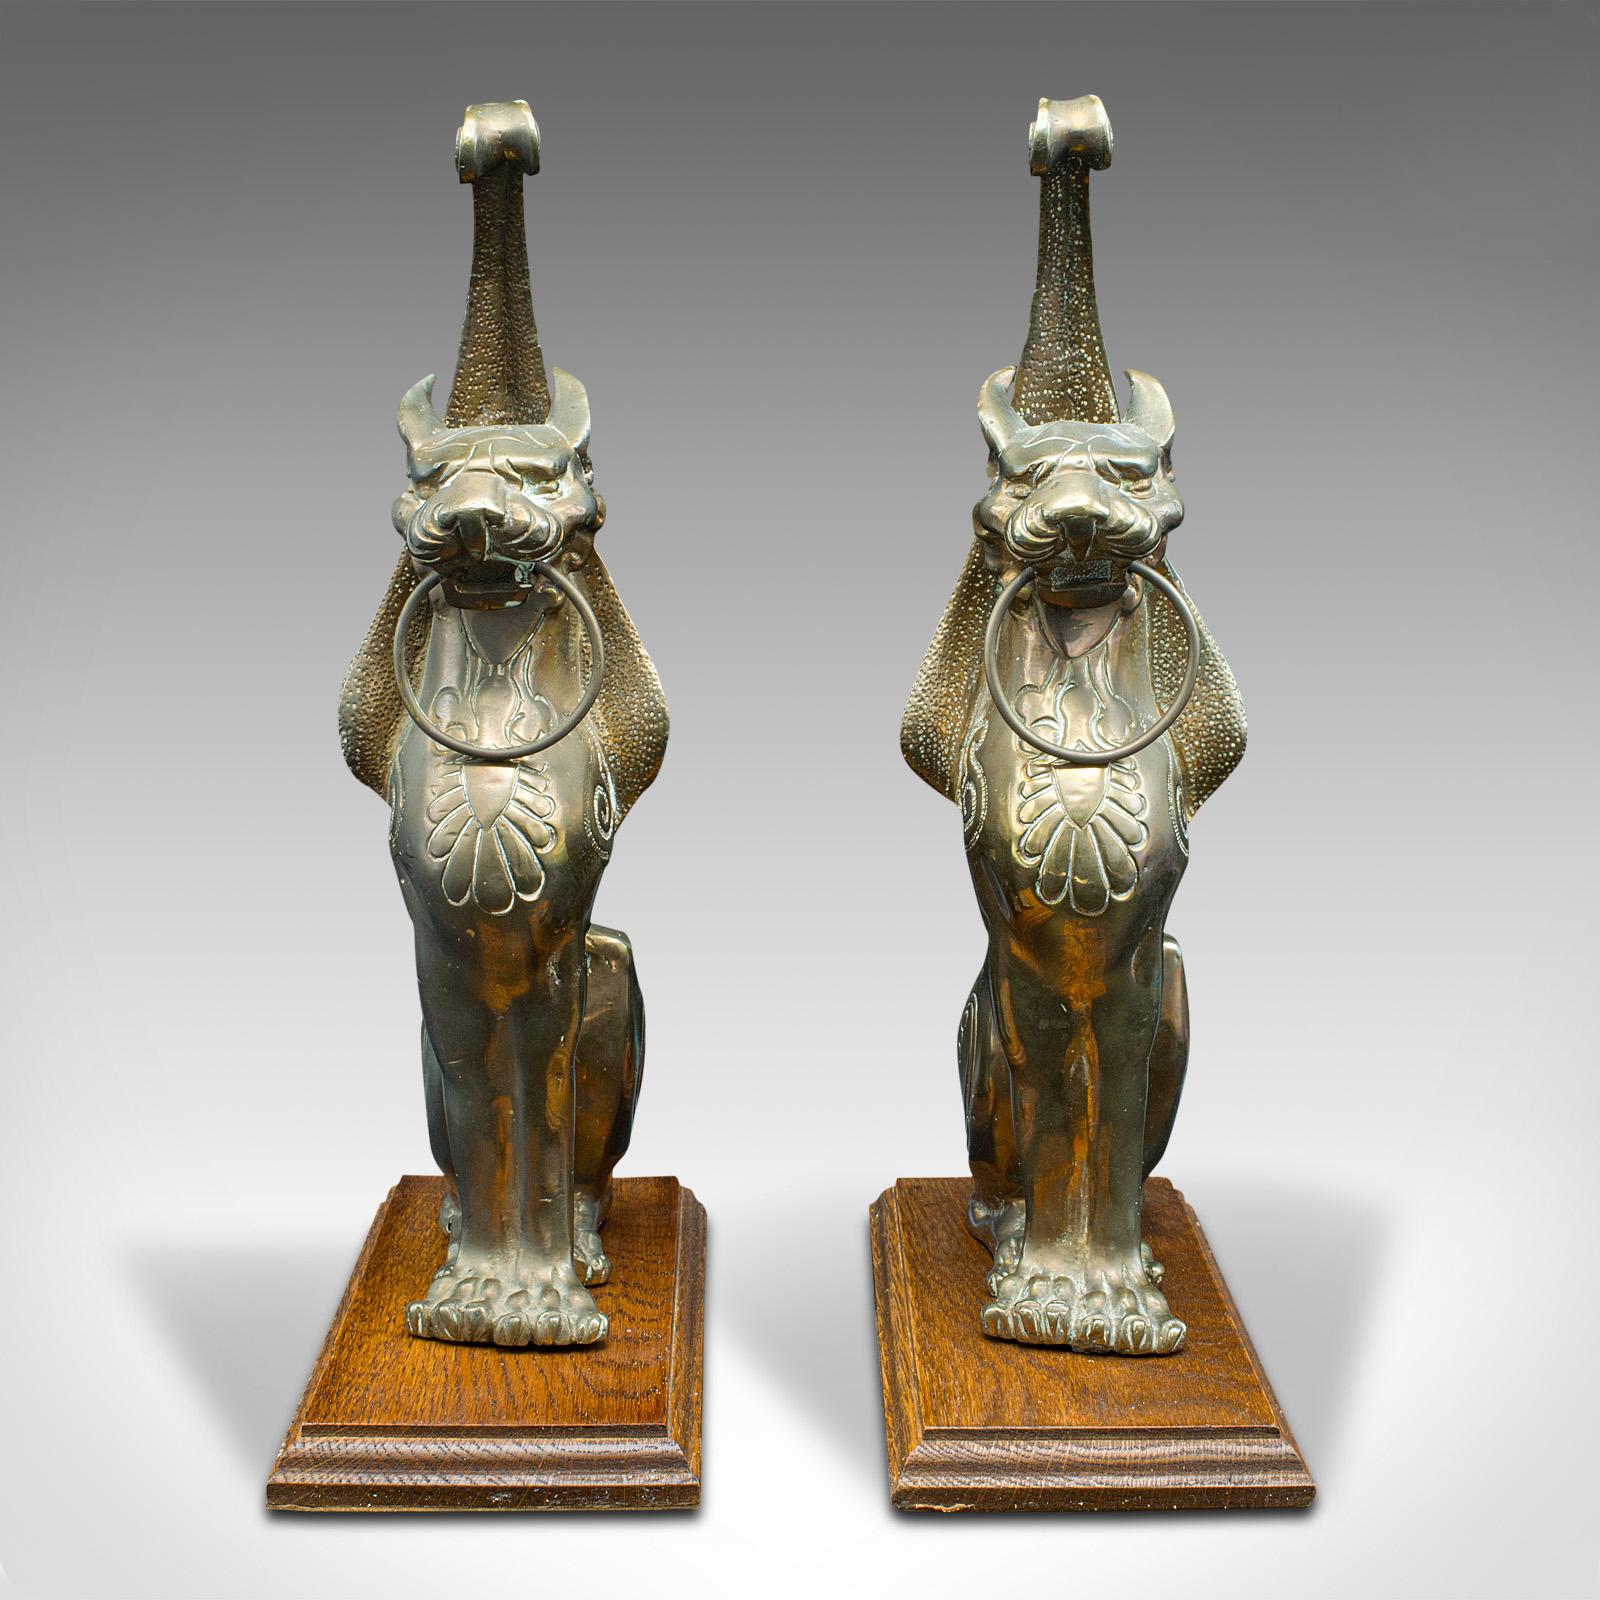 Il s'agit d'une paire de statues anciennes de chats ailés. Figure décorative italienne en bronze sur chêne dans le goût du Grand Tour, datant du début de la période victorienne, vers 1850.

Des ornements pour chats étonnants avec des ailes